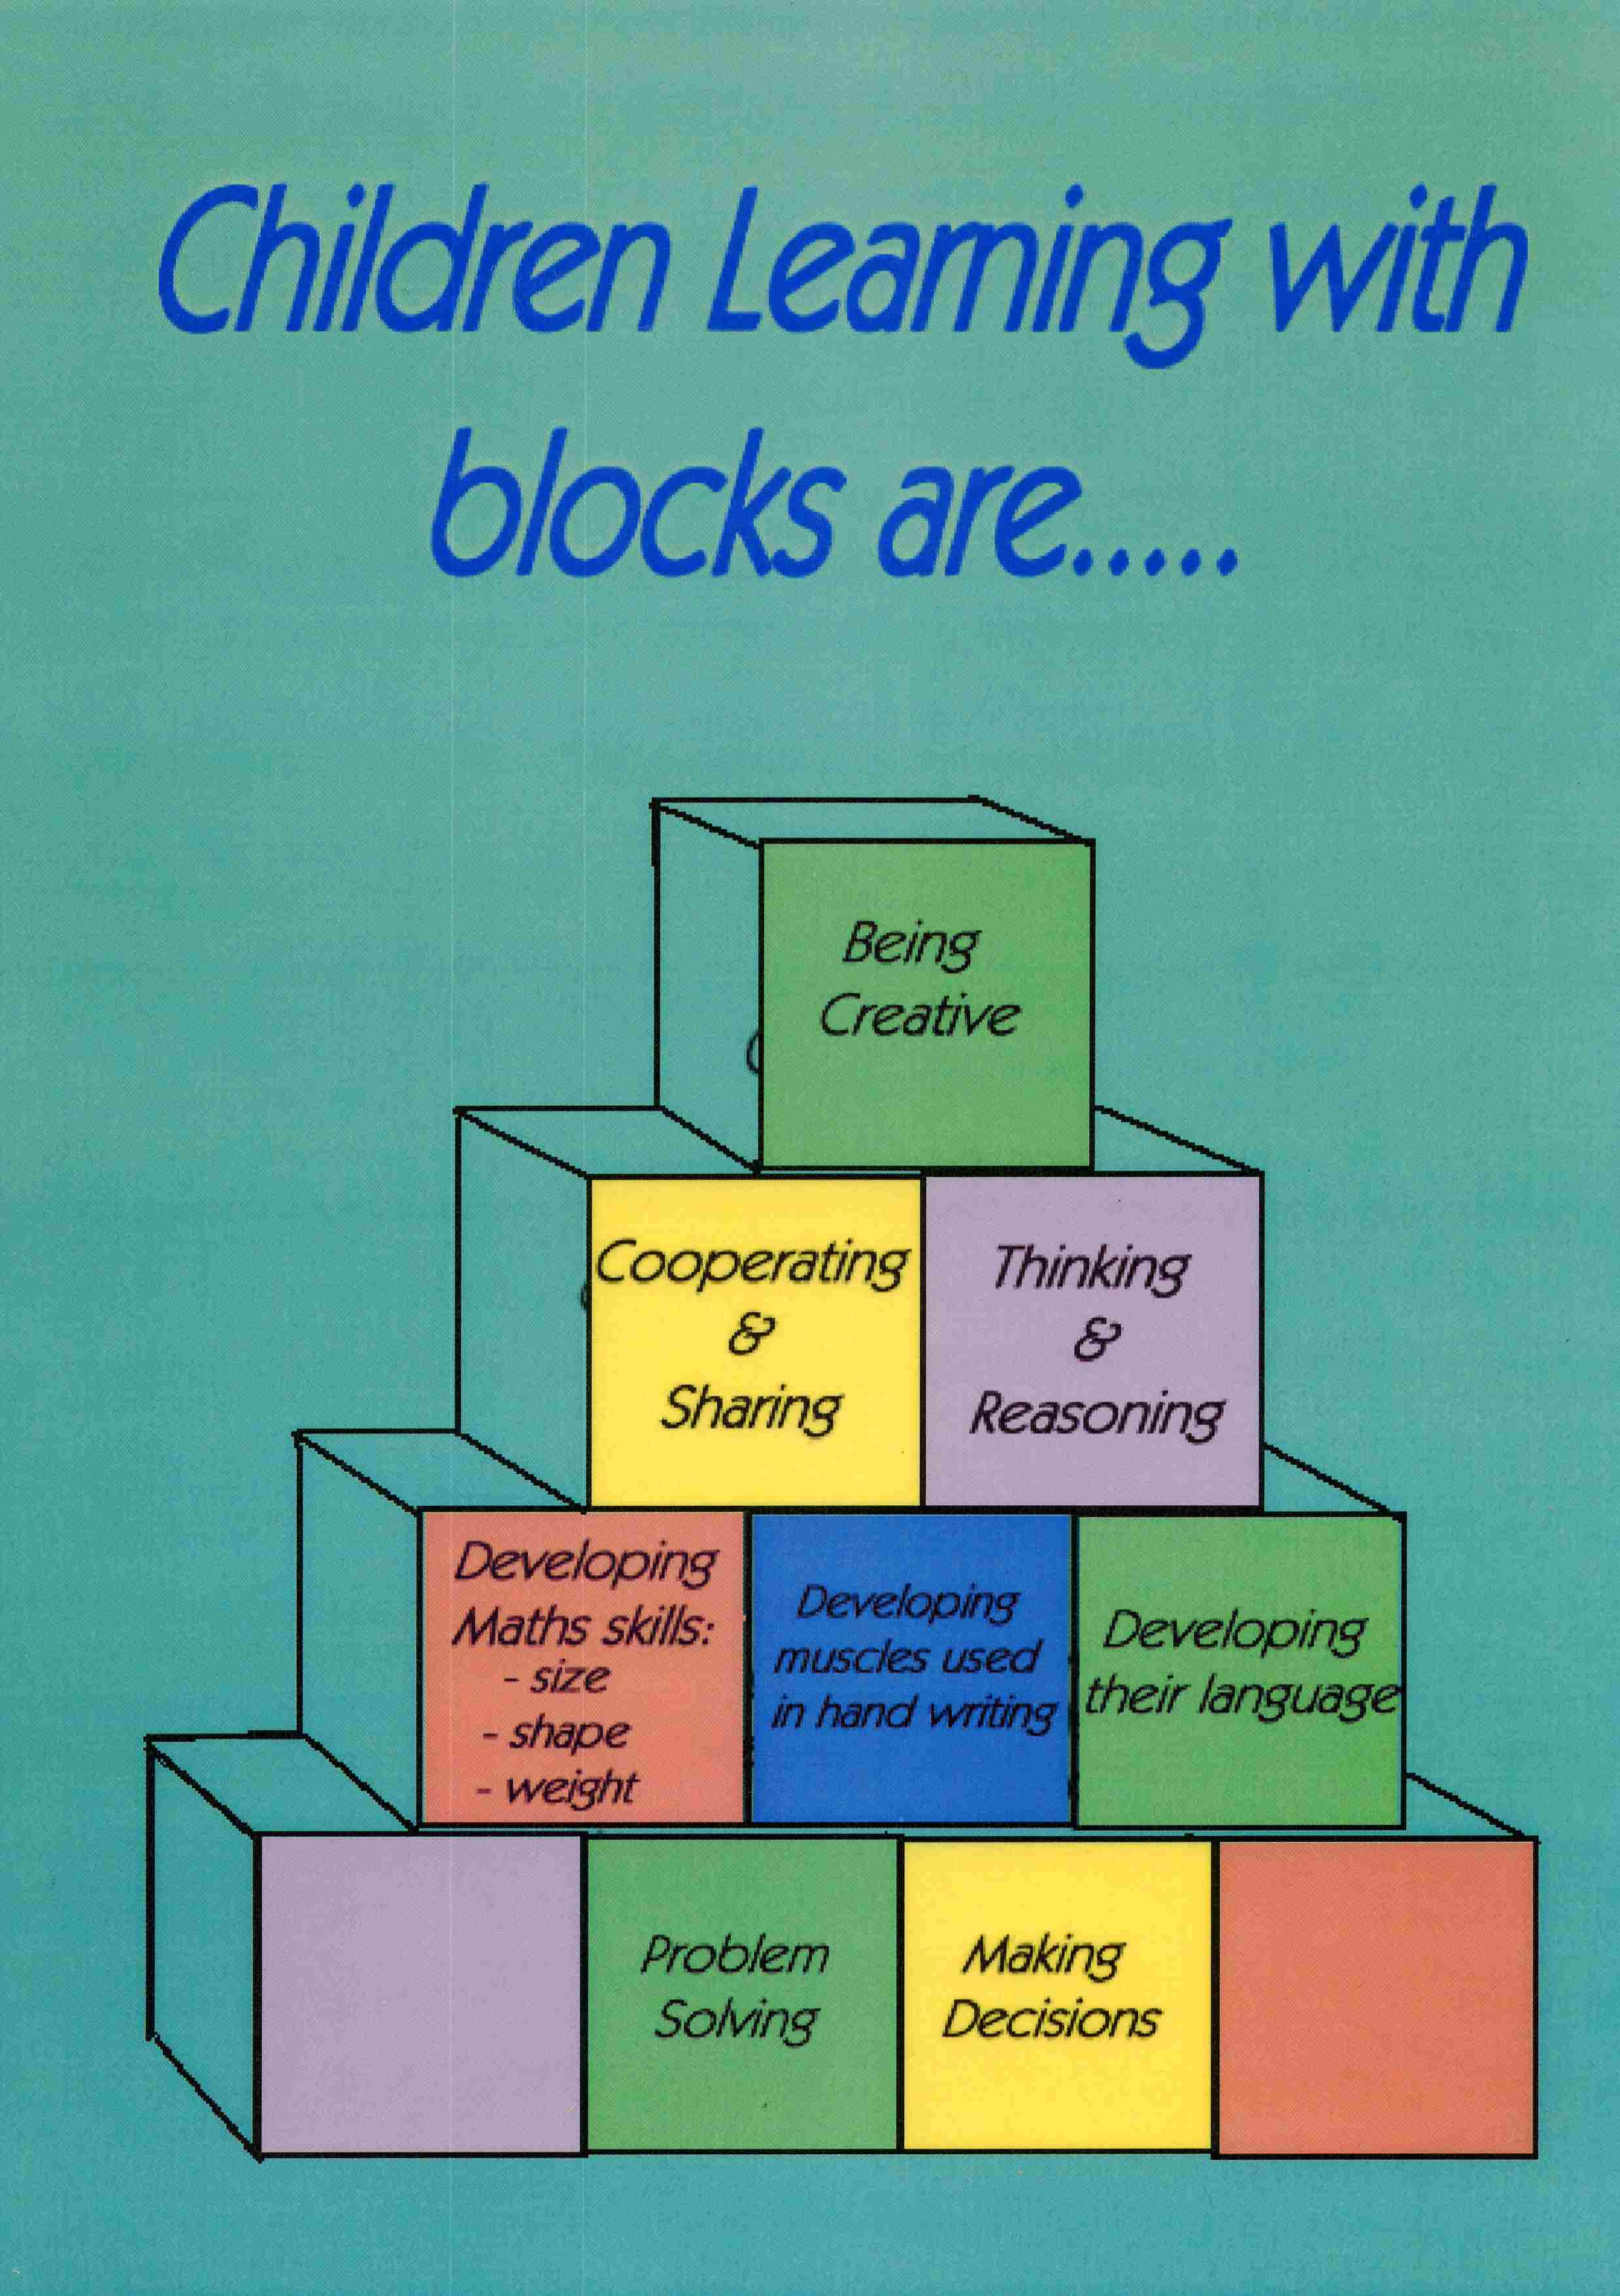 blockposter6 education tas gov au